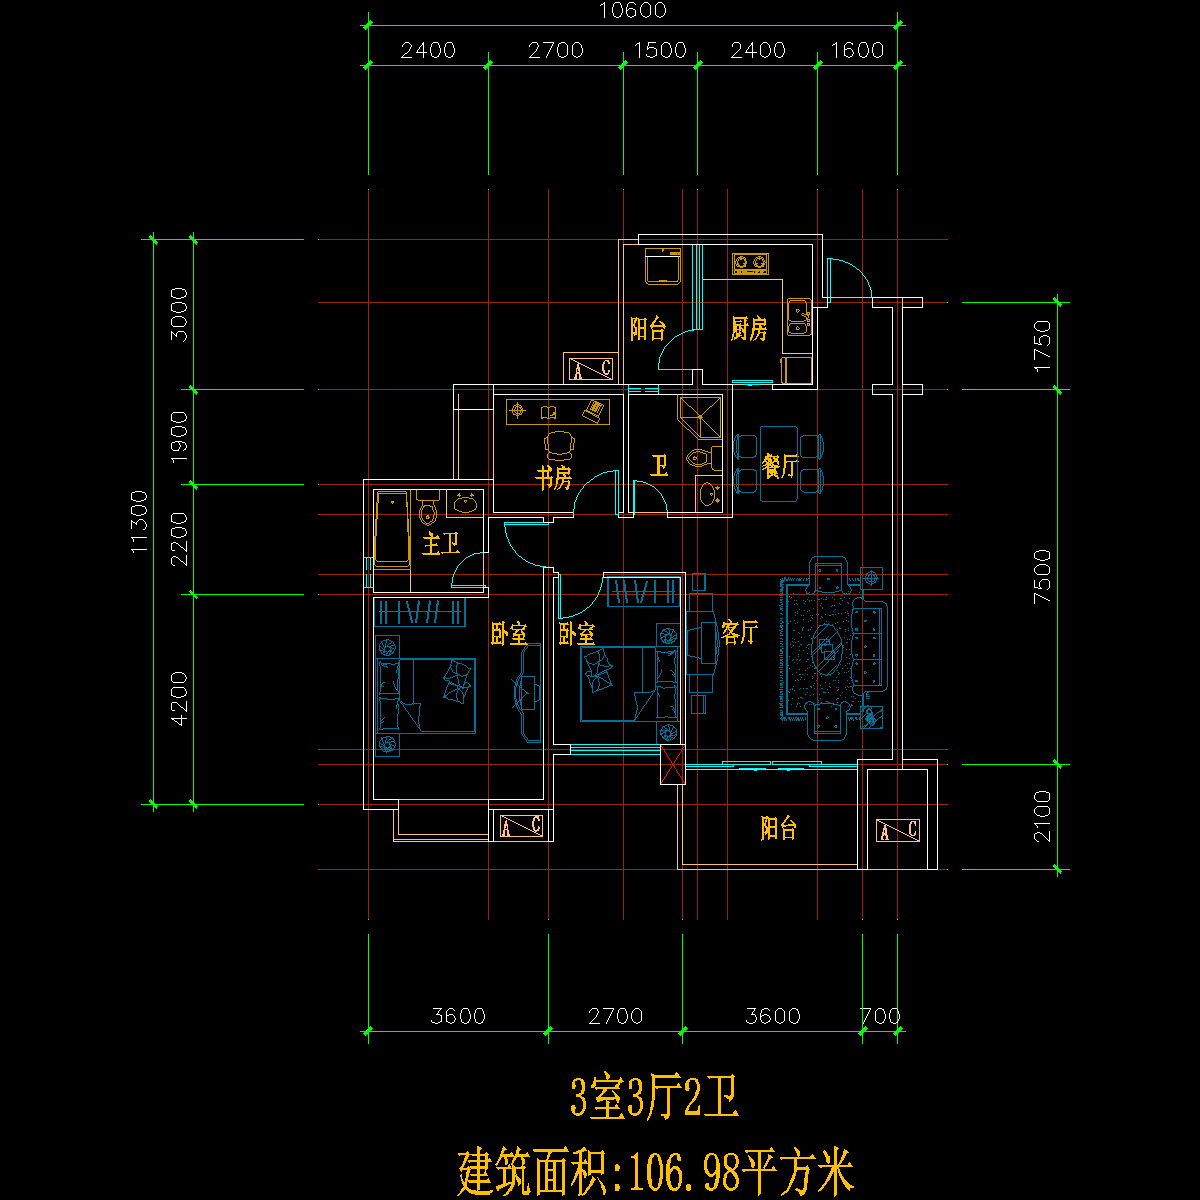 板式多层单户三室三厅二卫户型CAD图纸(107)